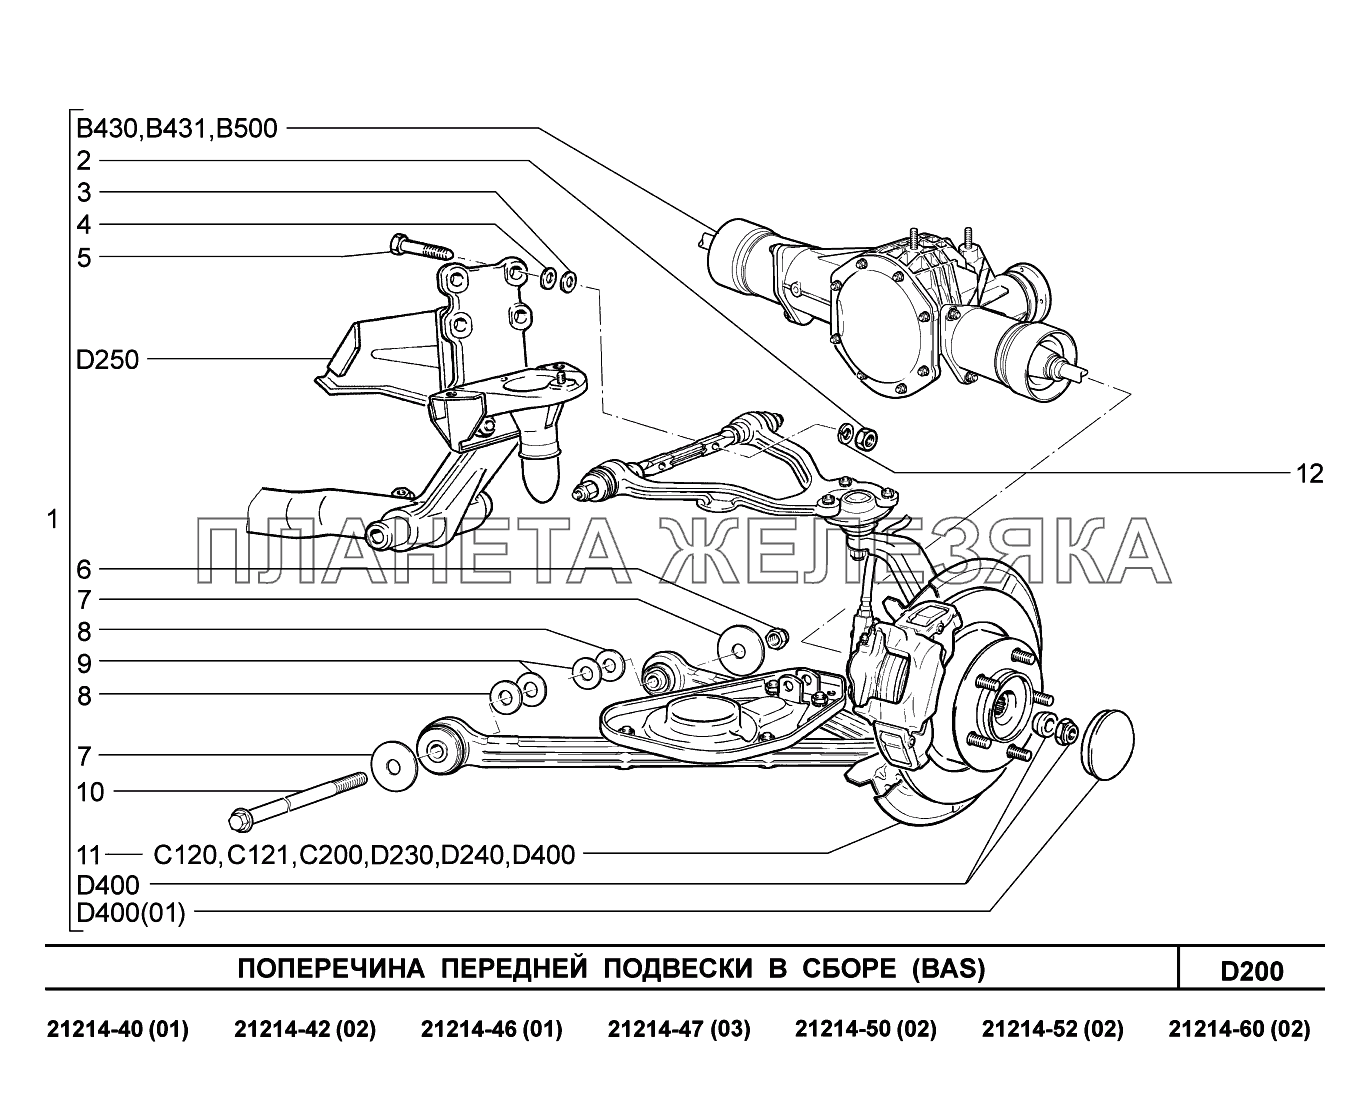 D200. Поперечина передней подвески в сборе Lada 4x4 Urban